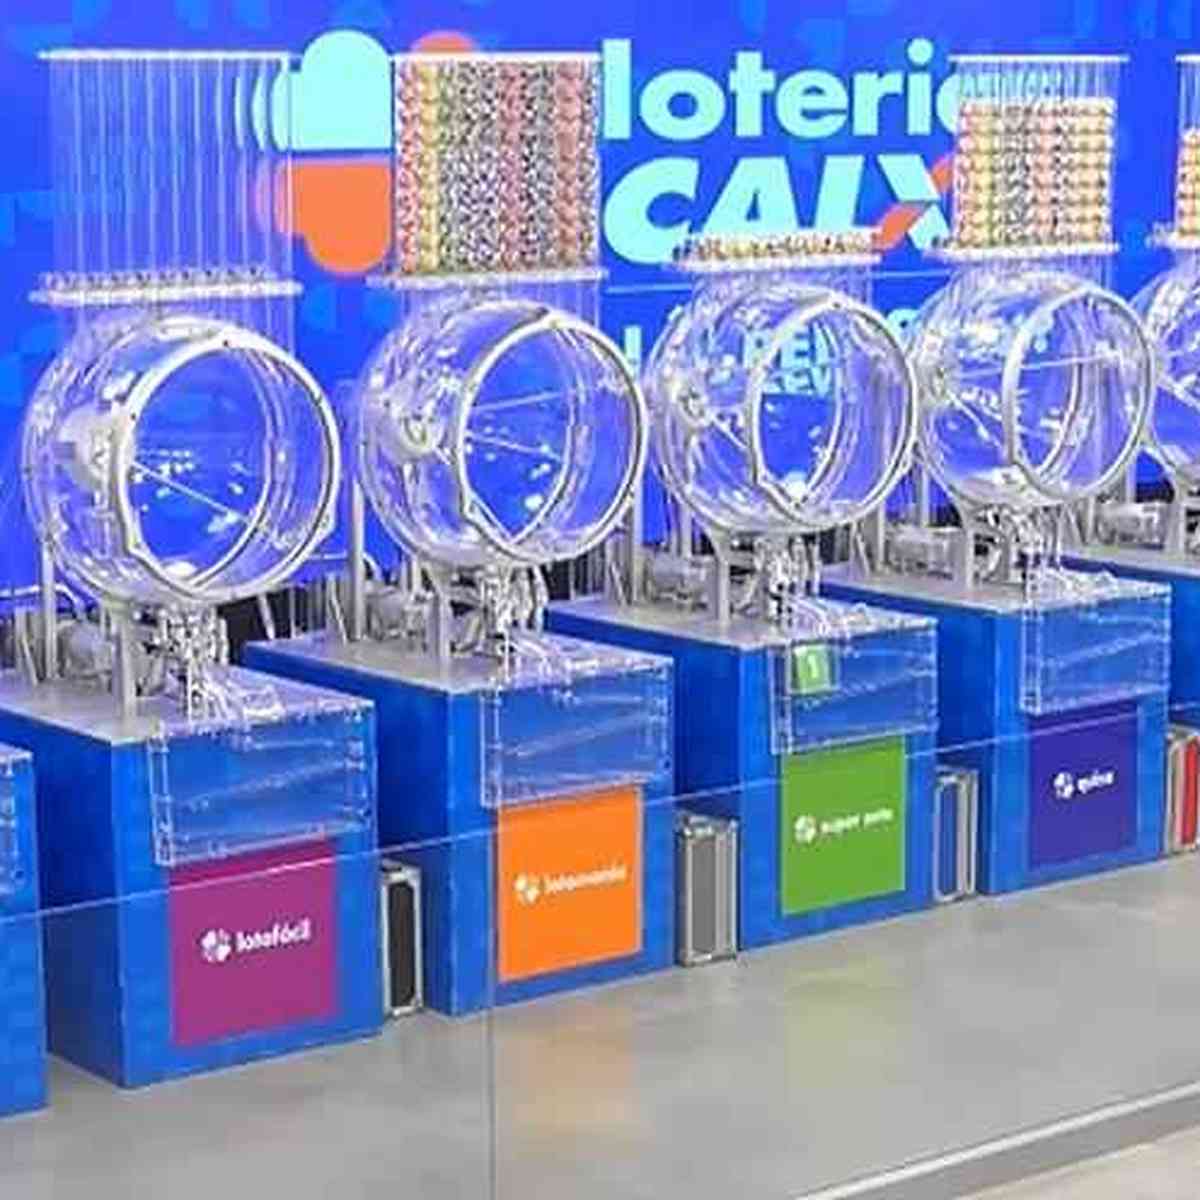 Caixa lança aplicativo para jogar Mega-Sena online - Canaltech